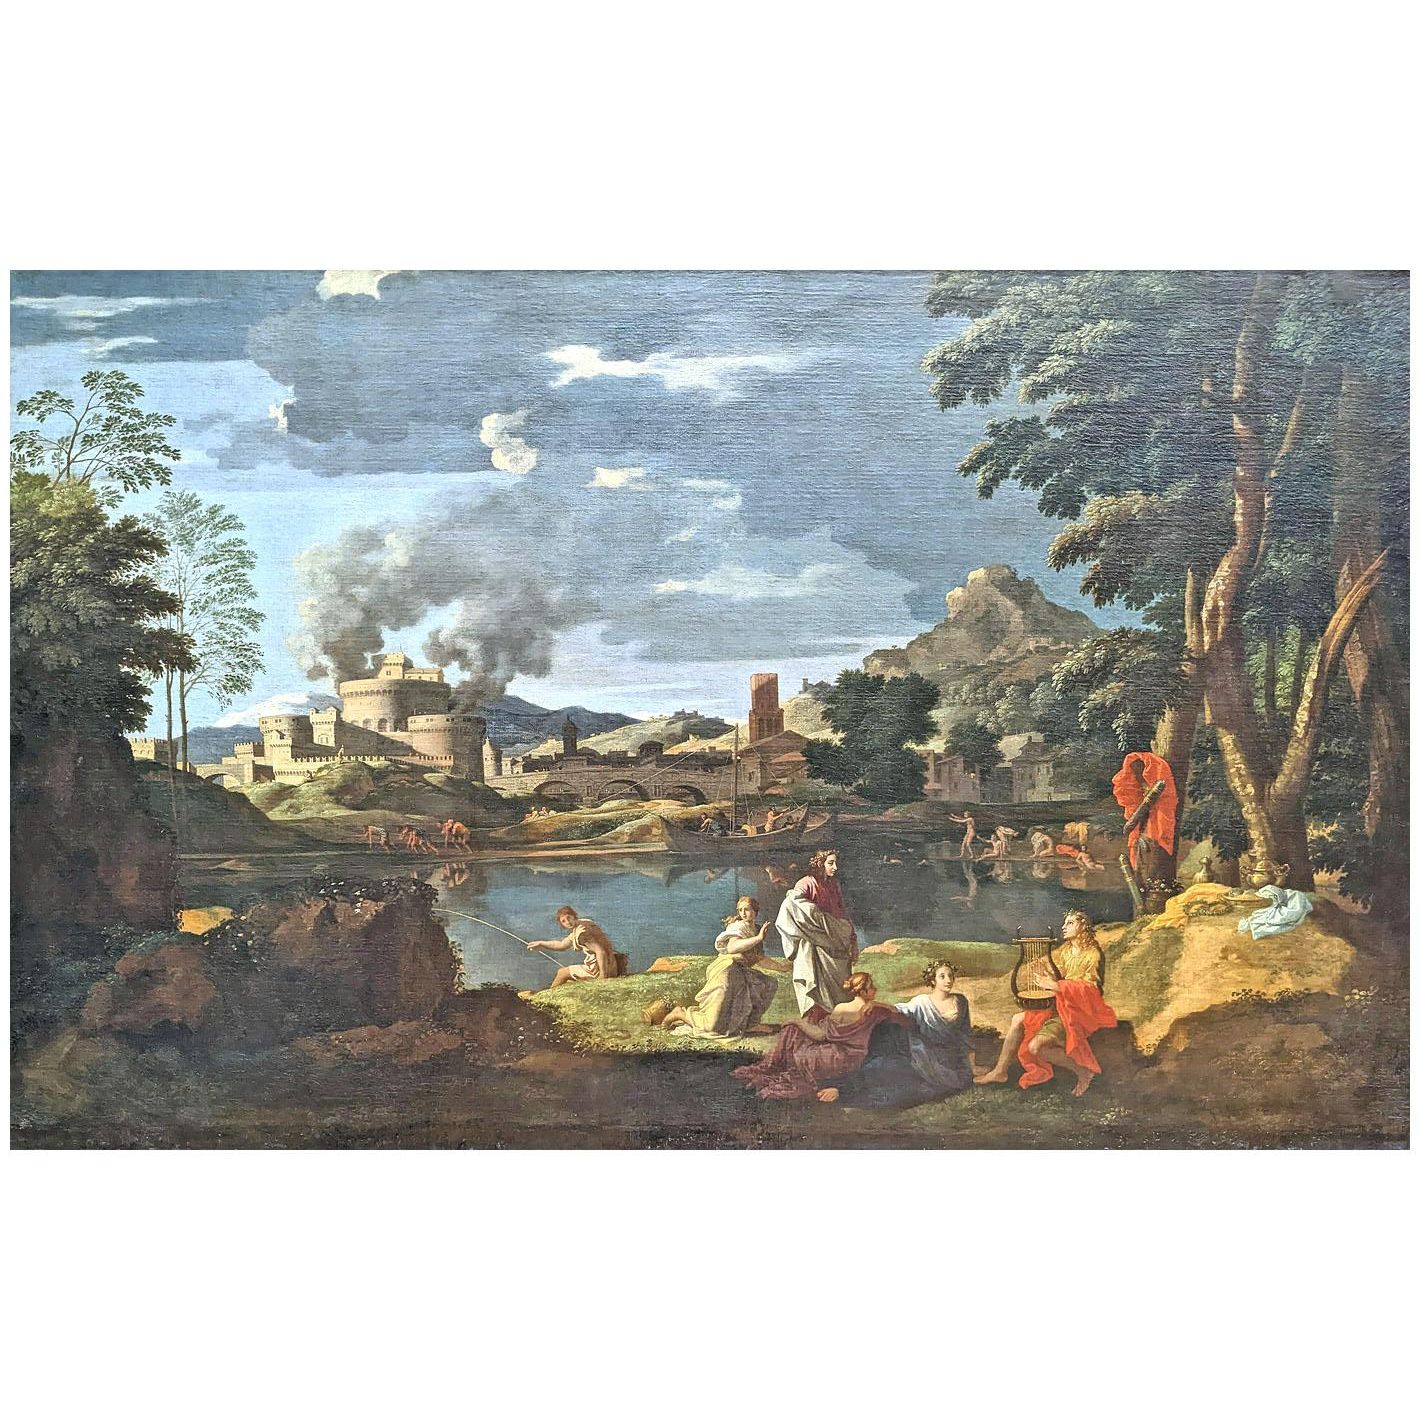 Nicolas Poussin. Orphée et Eurydice. 1650. Musee du Louvre